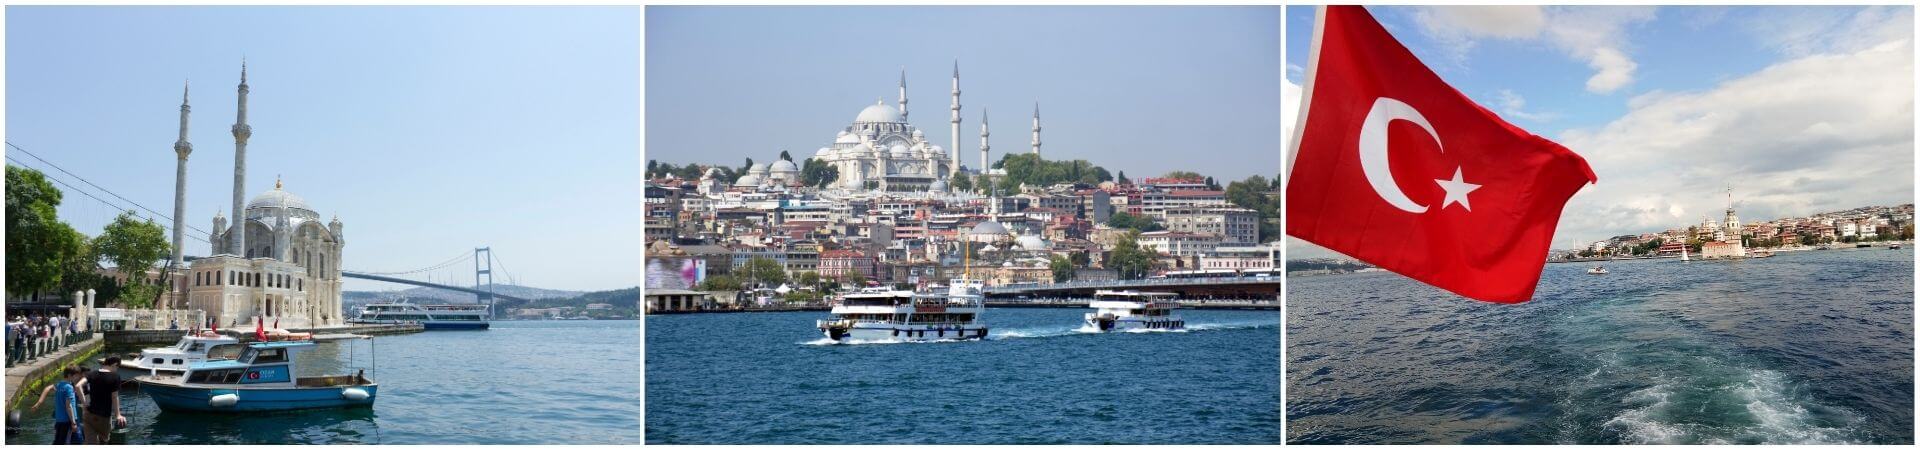 Hop-on-Hop-off-Bootsfahrt auf dem Bosporus